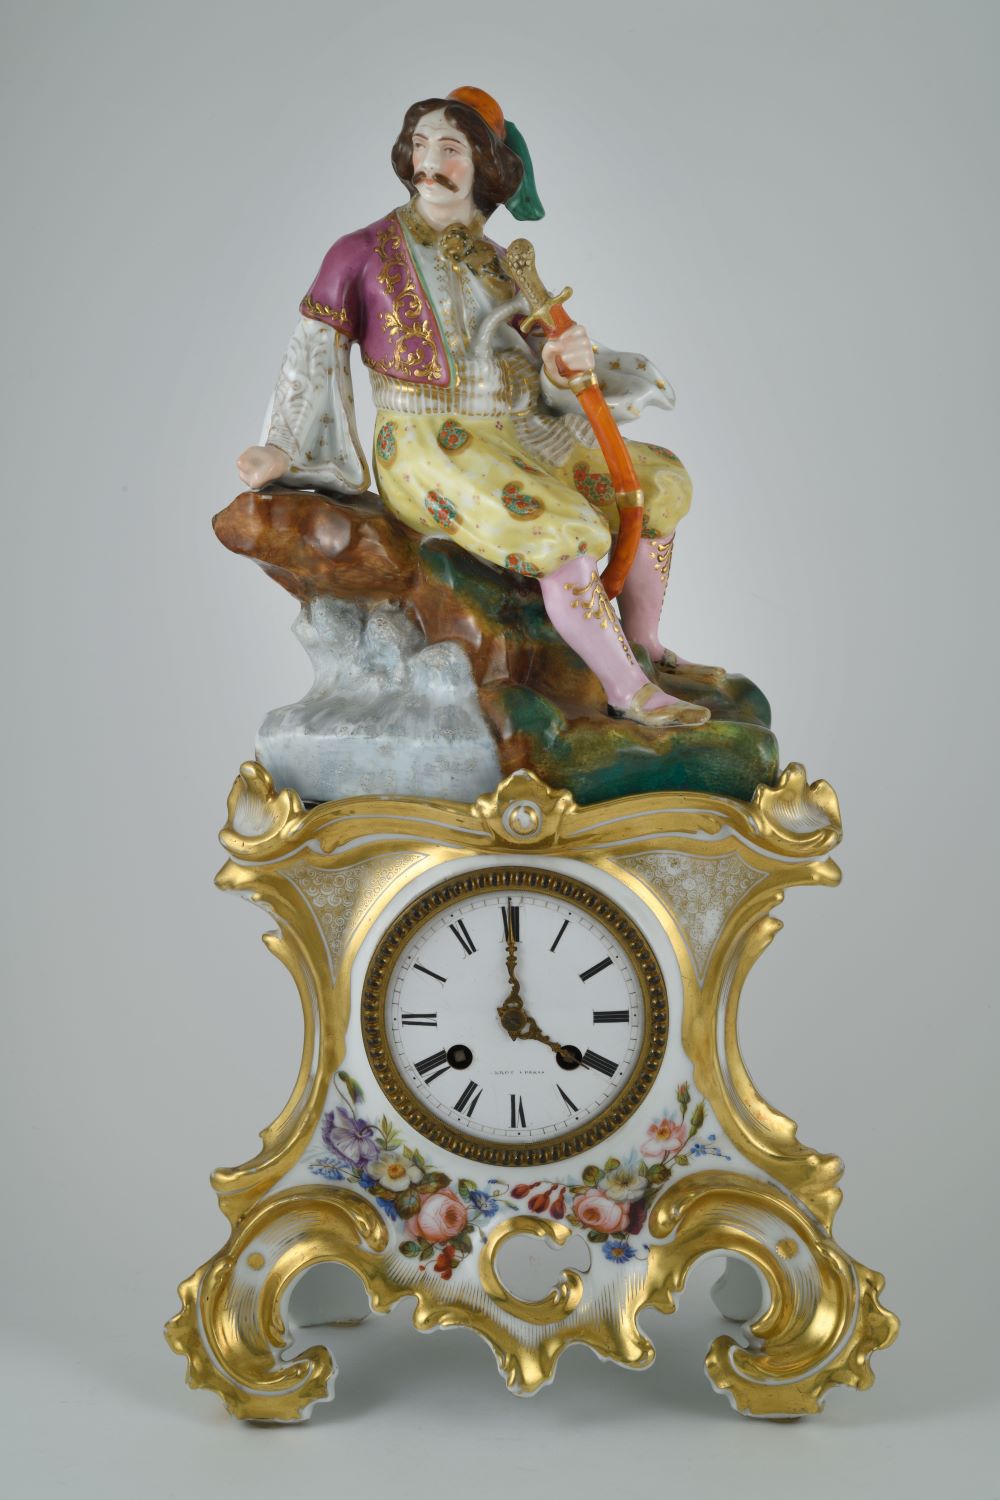 Φιλελληνικό επιτραπέζιο ρολόι από πορσελάνη, Εργαστήριο Ζακόμπ Πετί, Γαλλία, 1820-1840. Δωρεά Στέφαν Άντλερ 